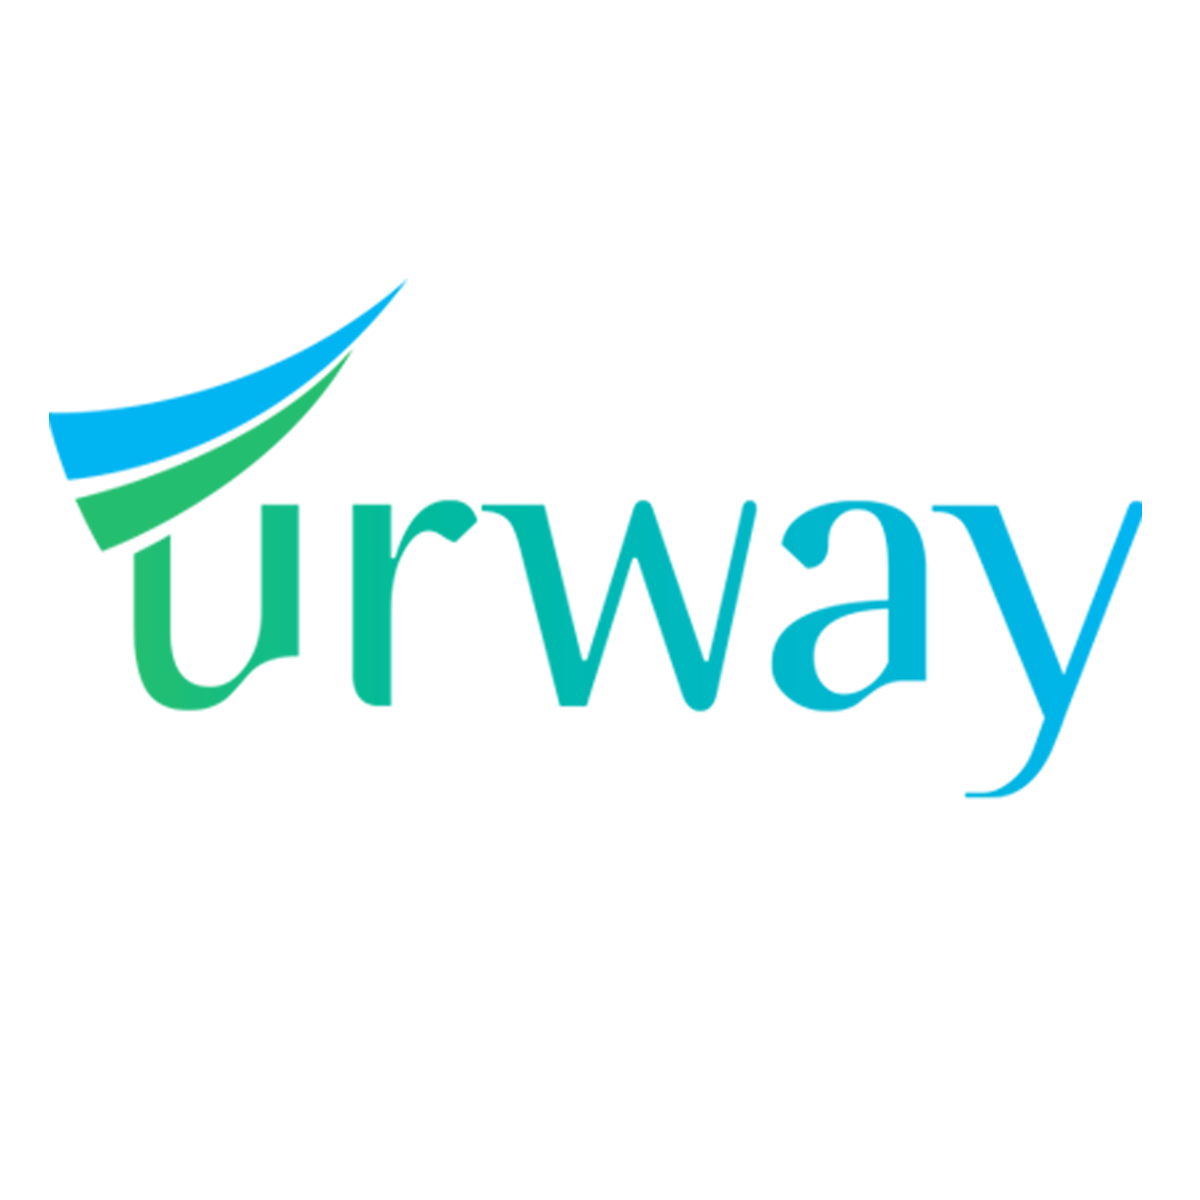 URWAY Payment Gateway